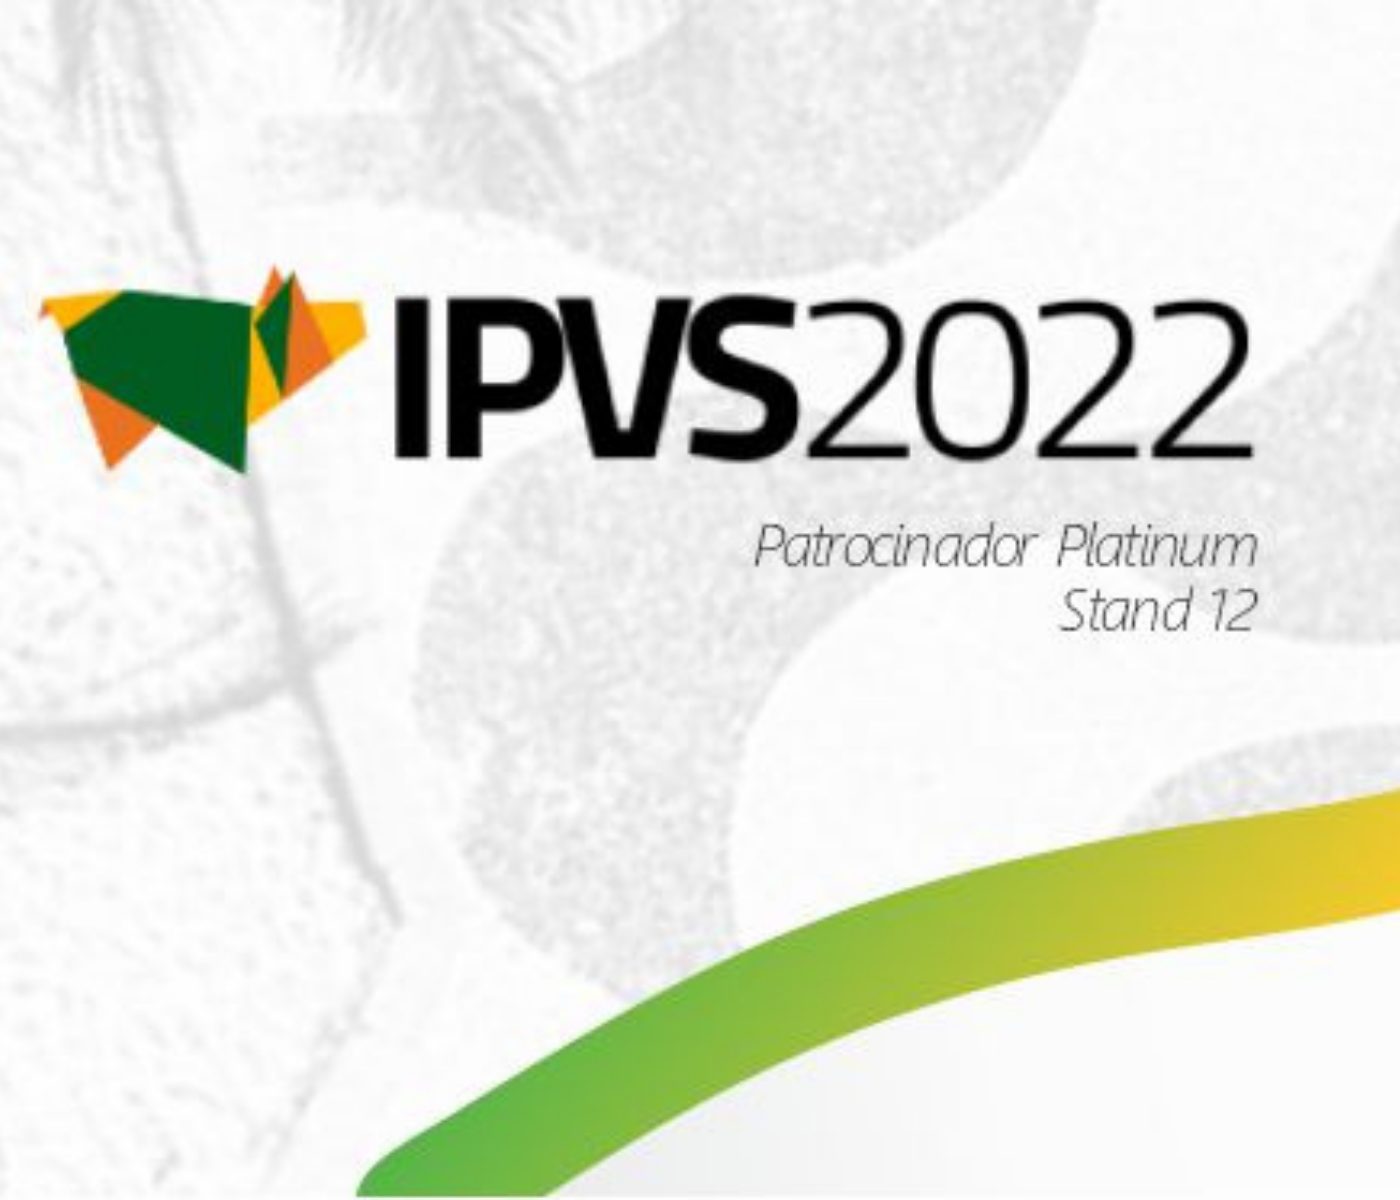 Vetanco é patrocinadora do Congresso IPVS 2022